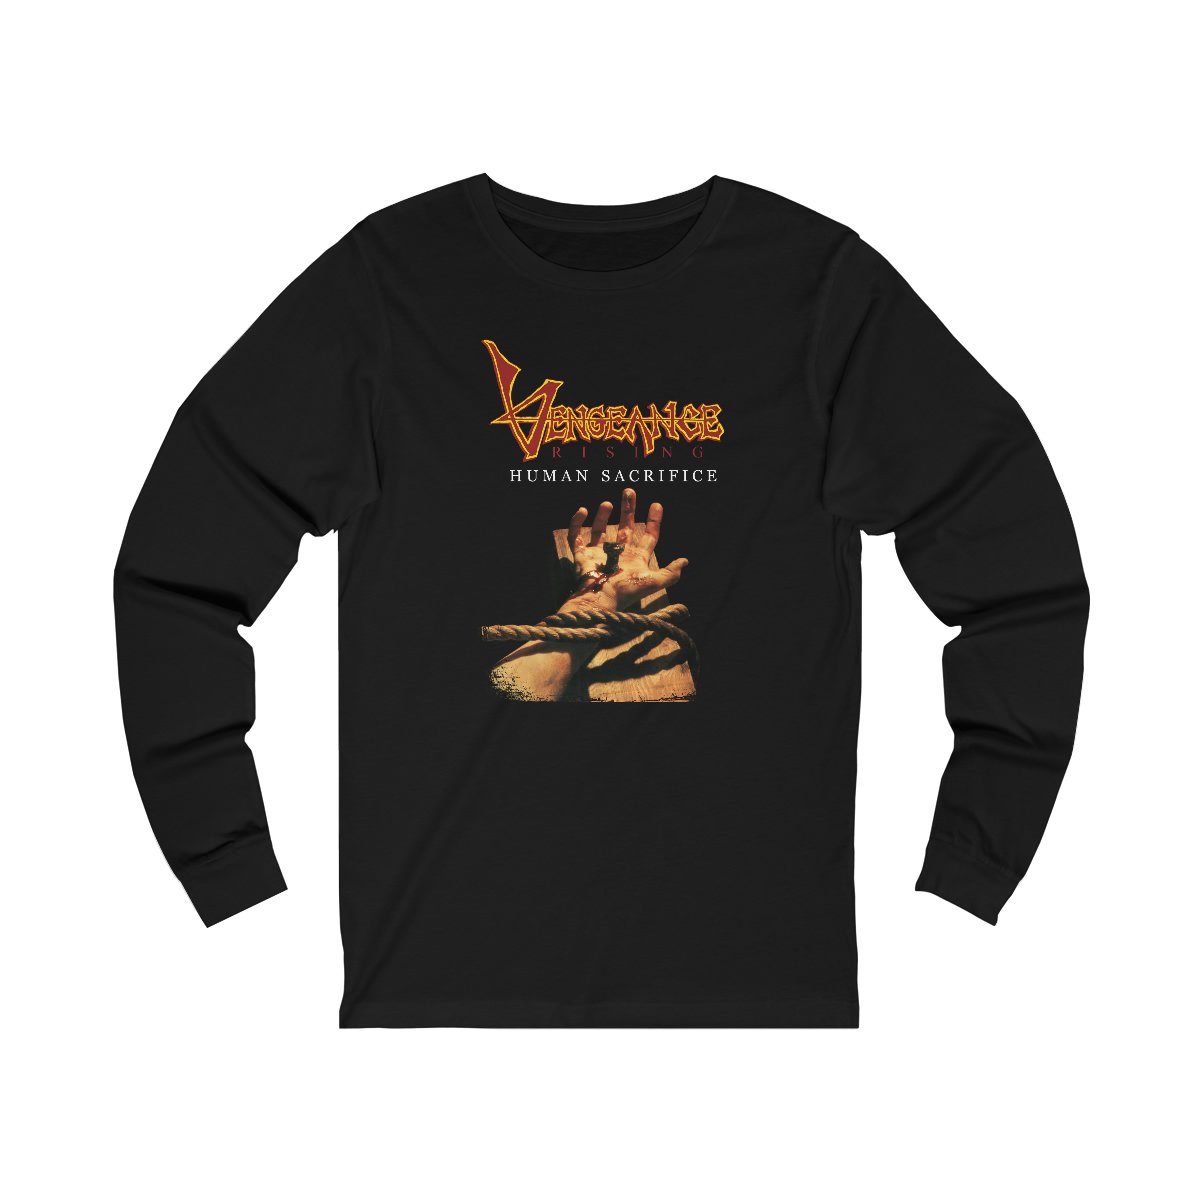 Vengeance Rising – Human Sacrifice Long Sleeve Tshirt